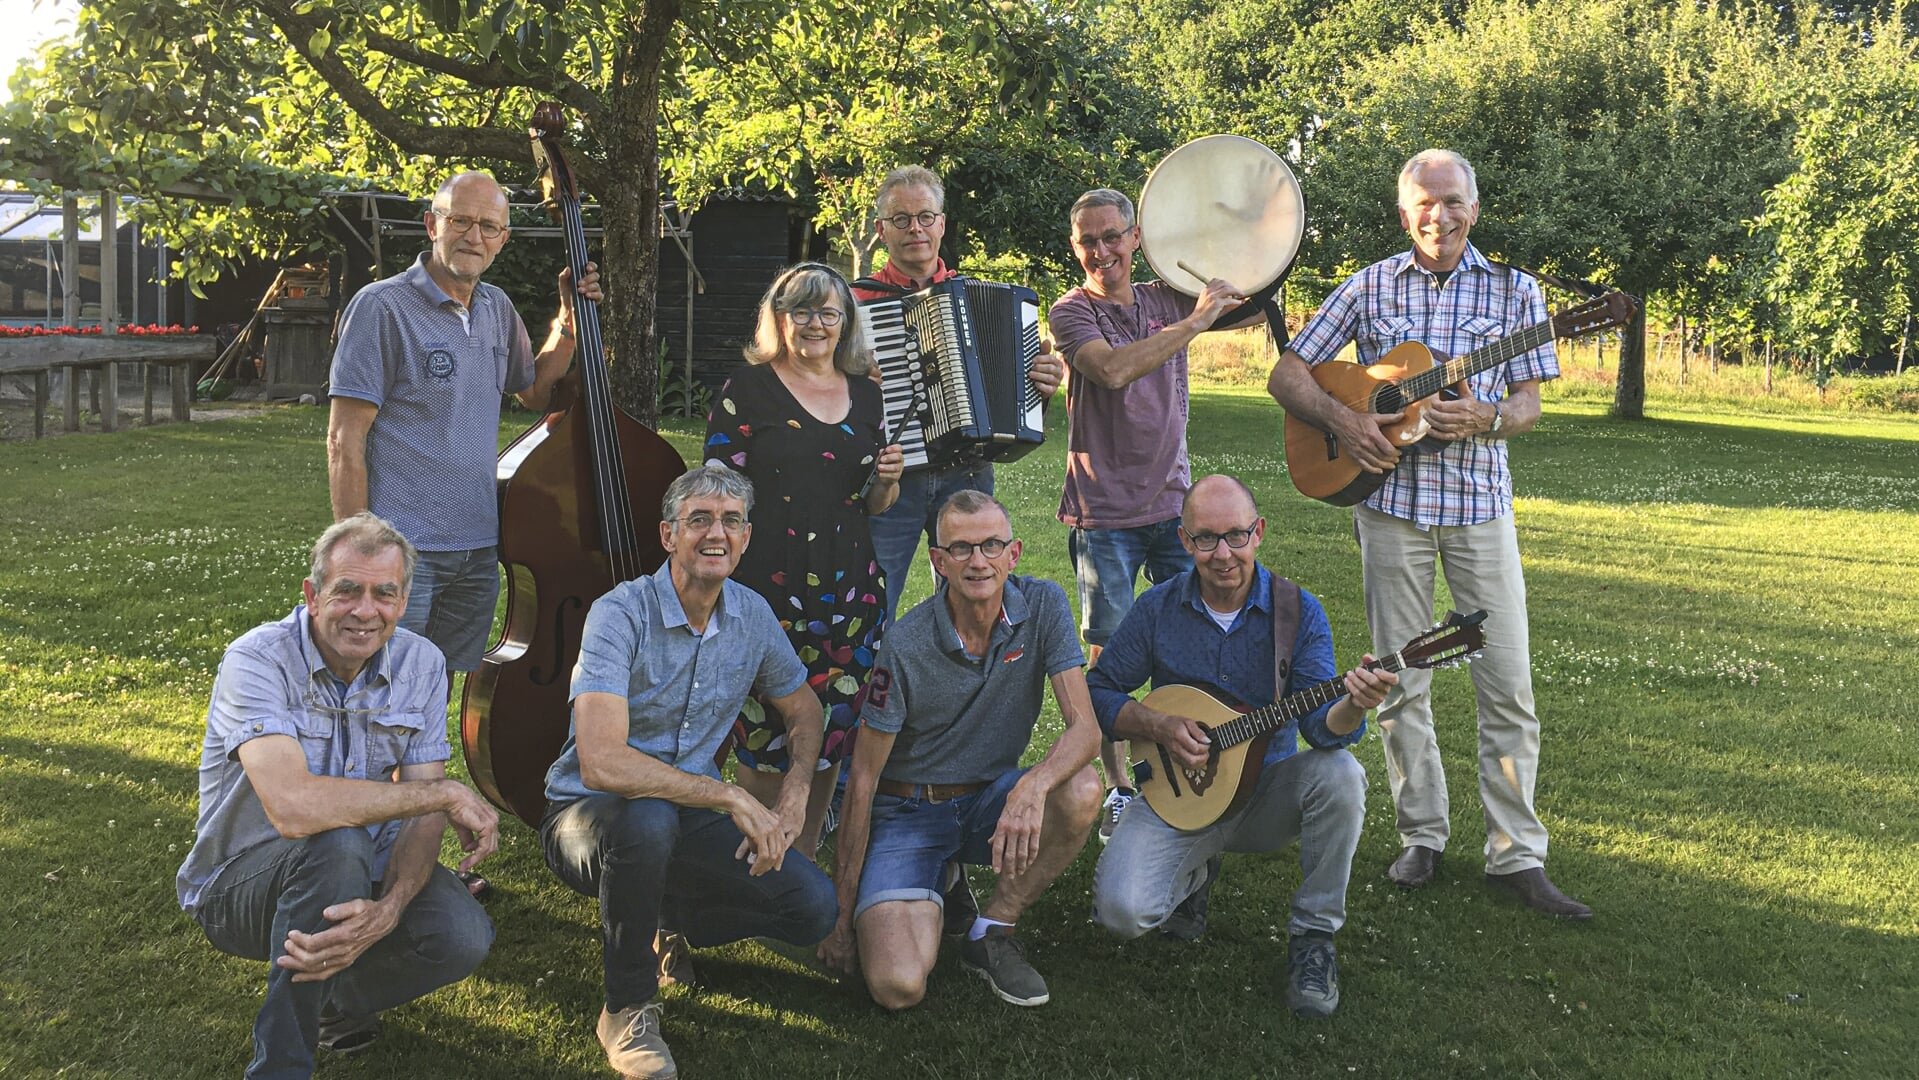 De leden van The Auld Smiddy Folkband in de Zelhemse achtertuin, waar de band op zondag 18 juni optreedt. Foto: PR